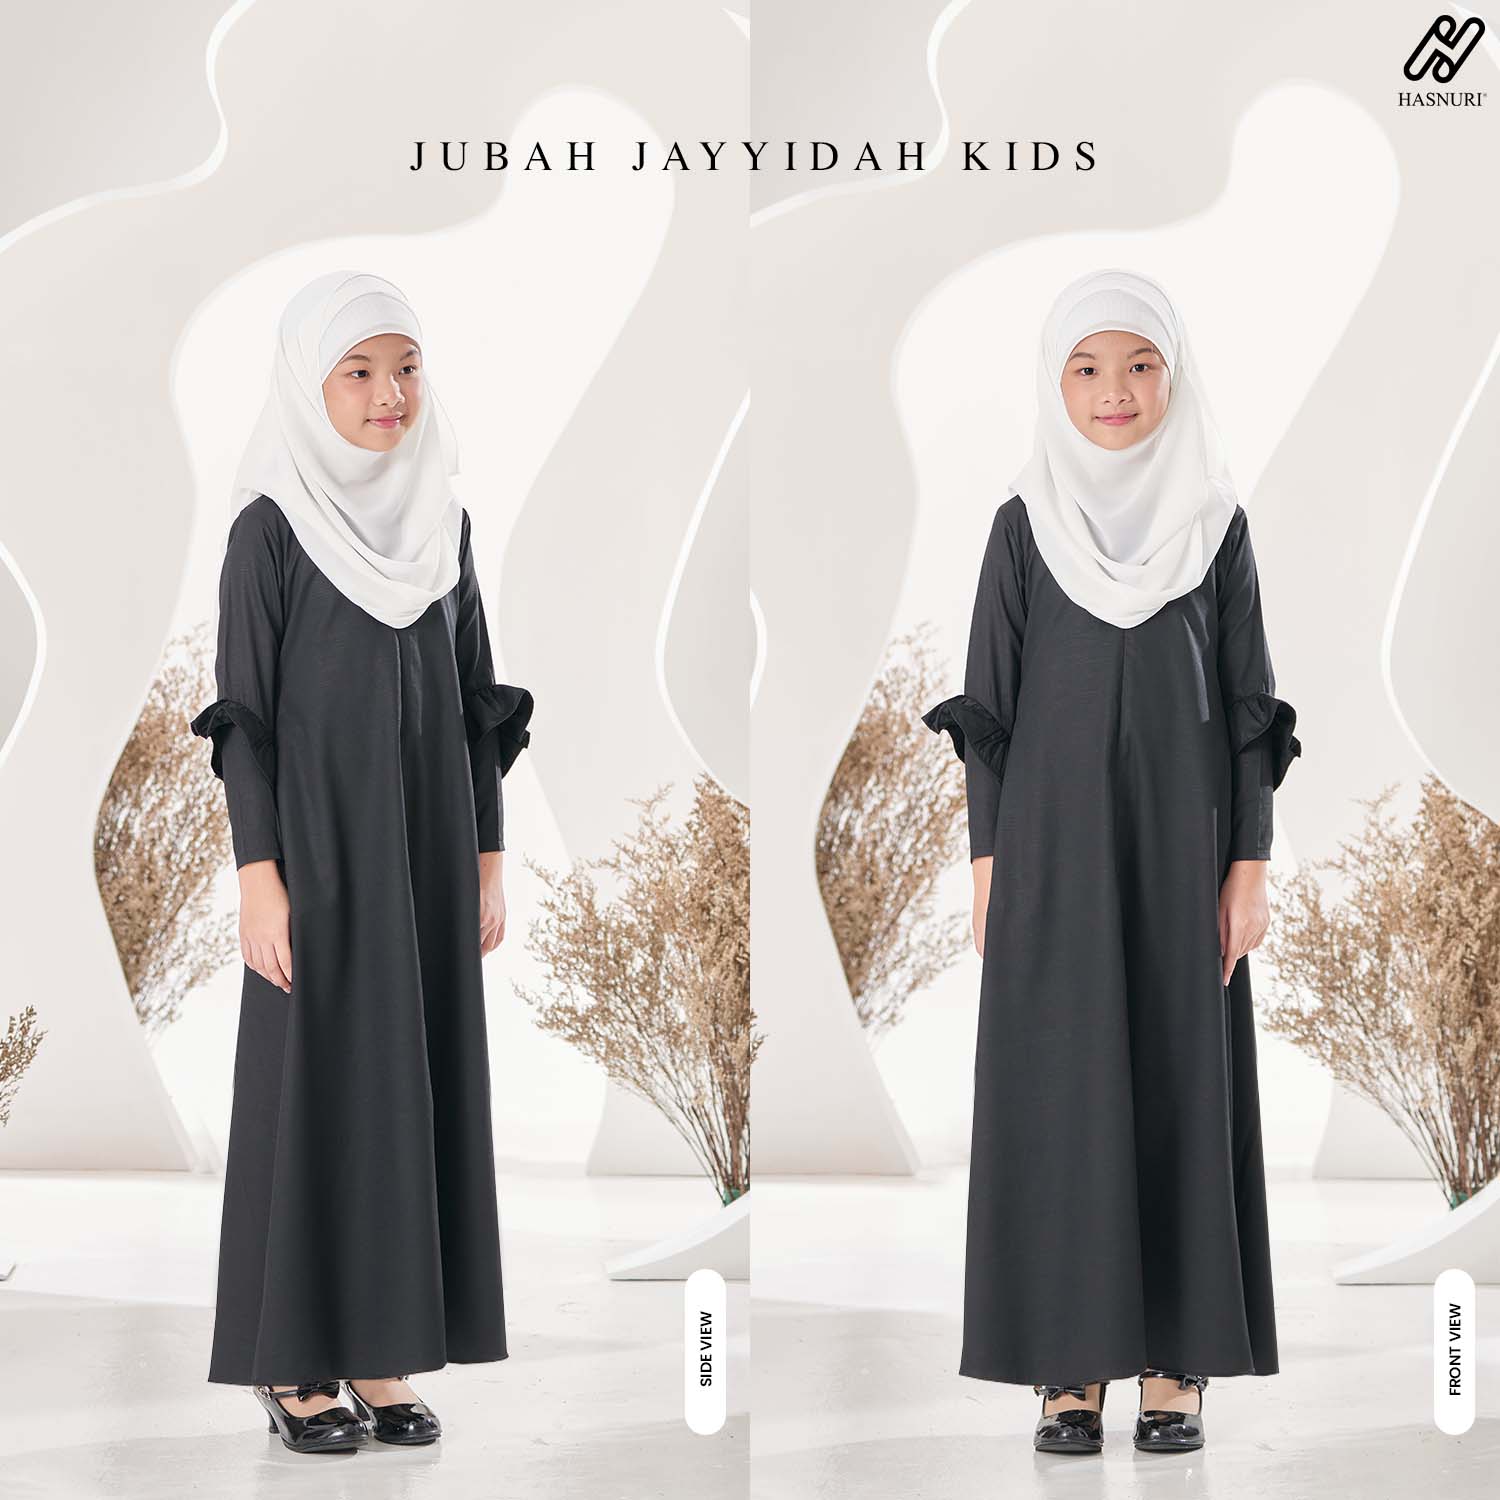 Jubah Jayyidah Kids - White